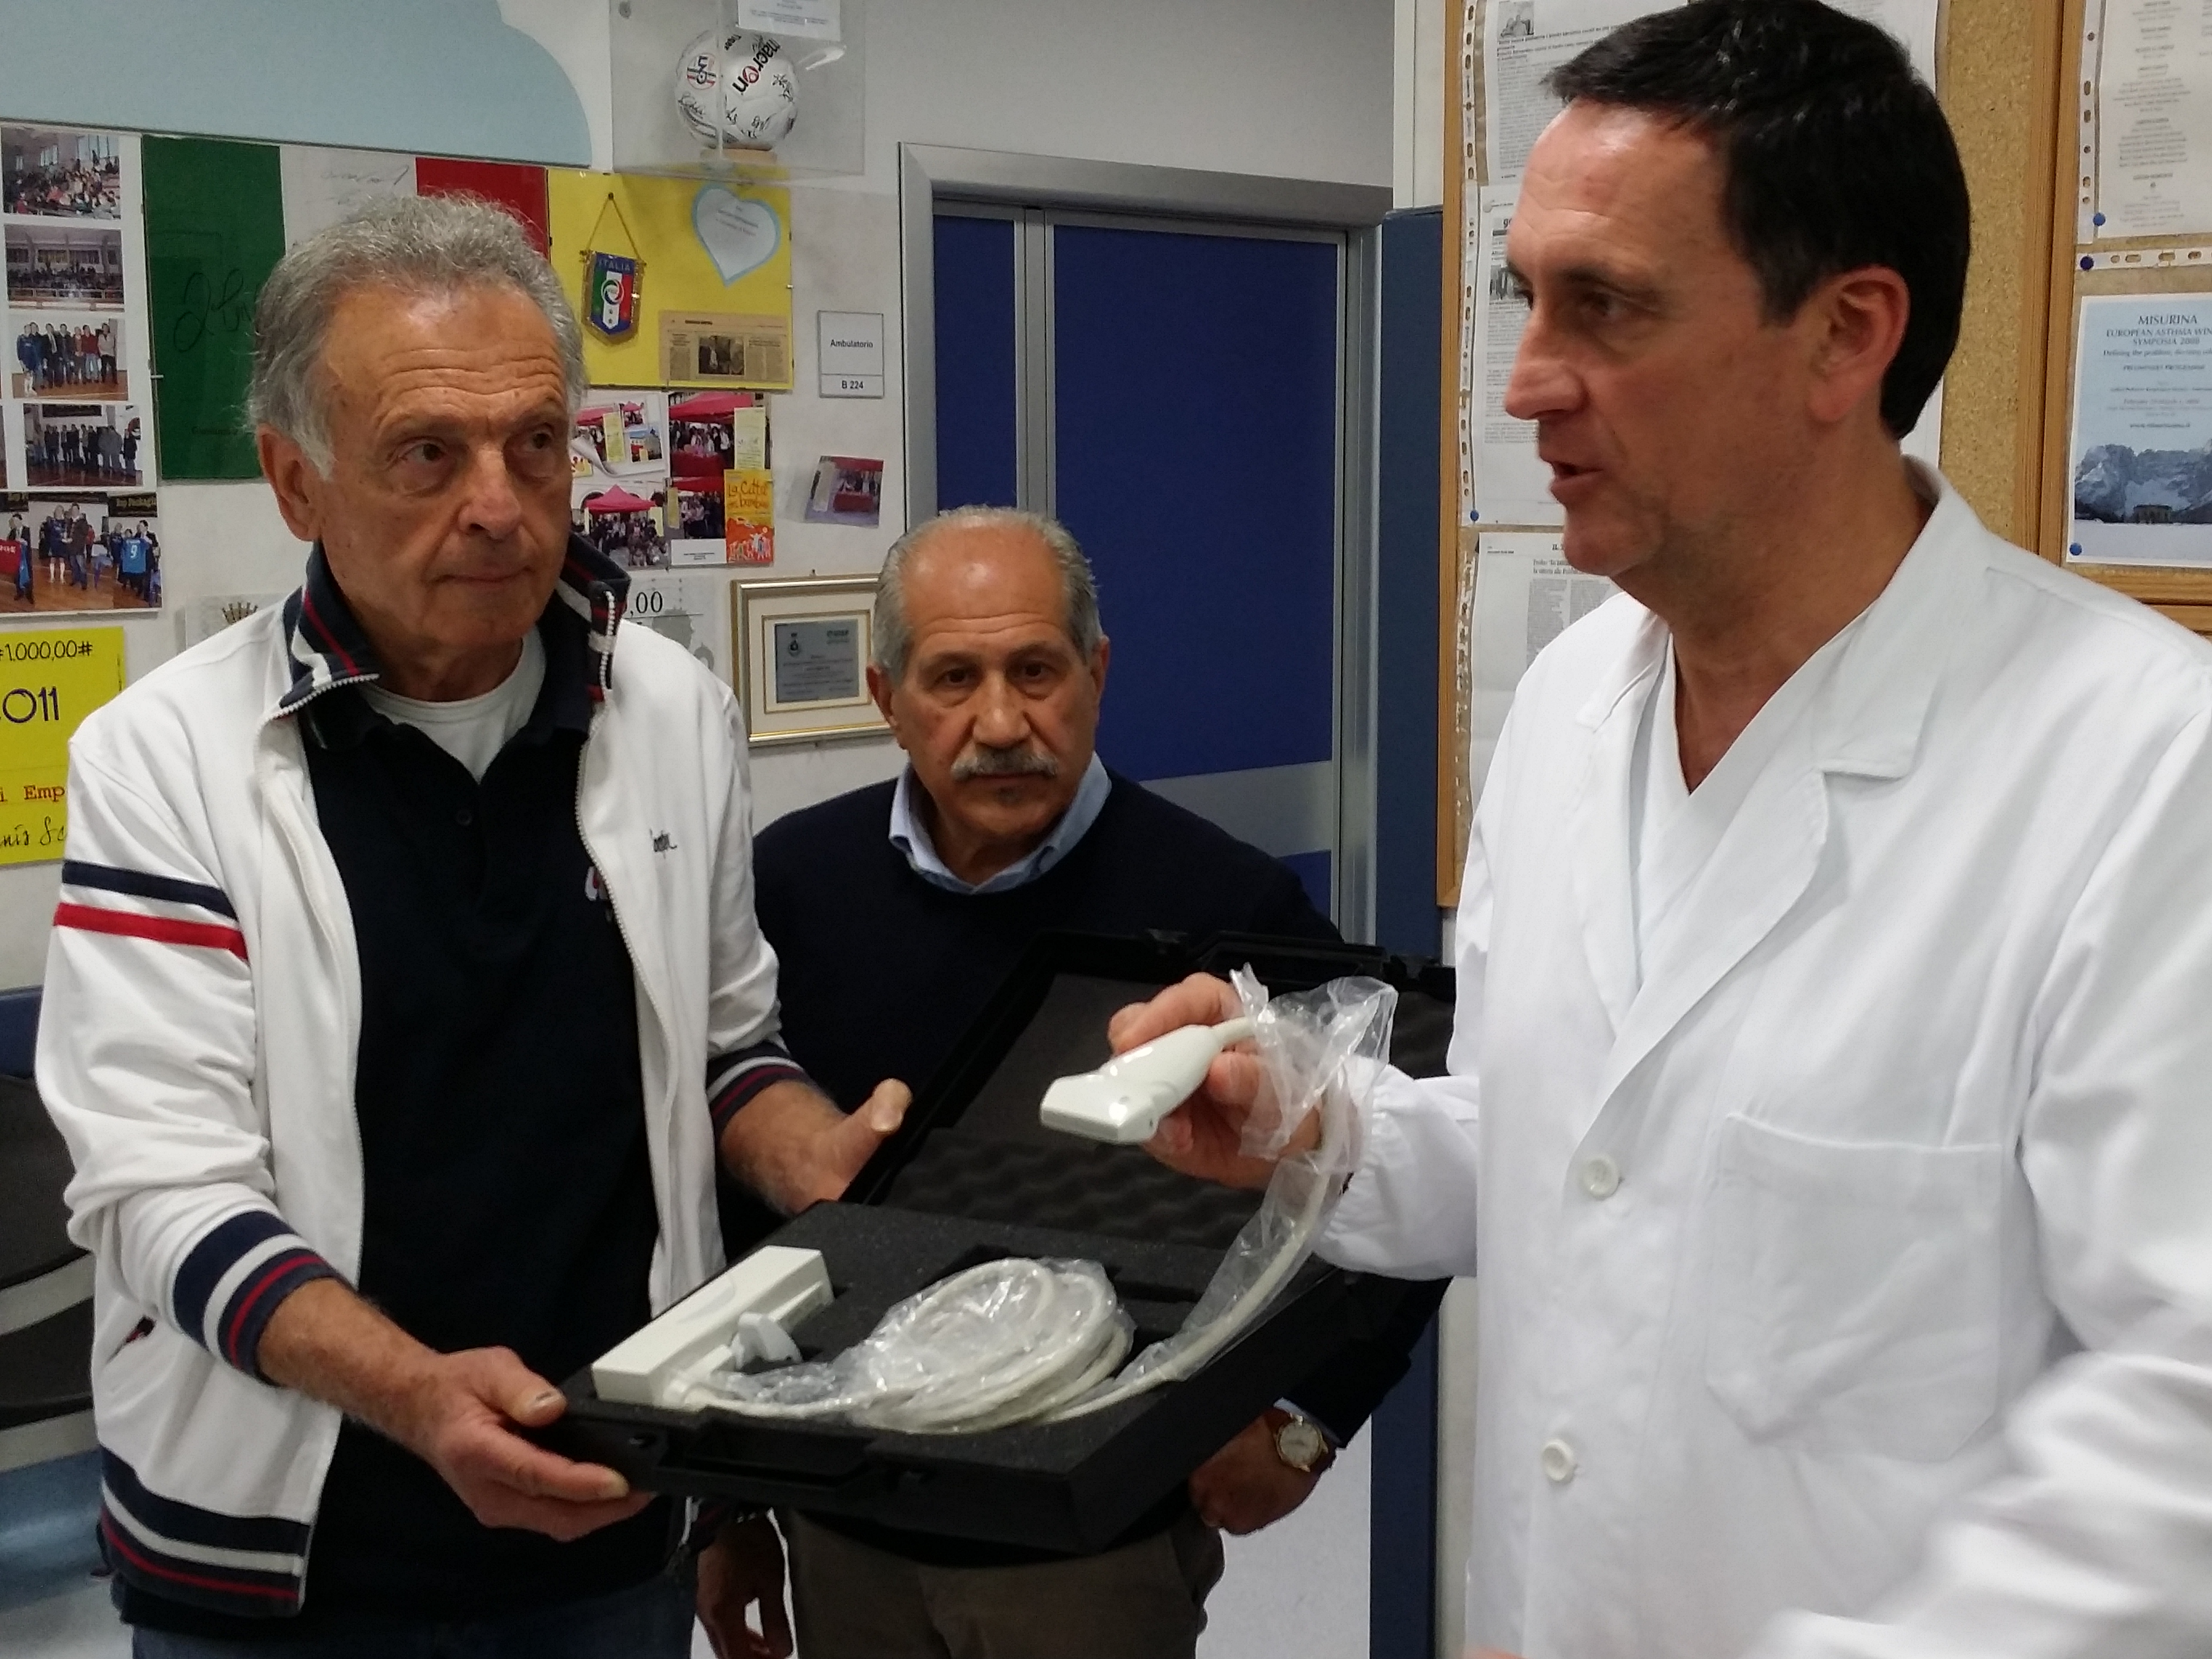 Donata una sonda per ecografo Avis di Vinci alla pediatria di Empoli